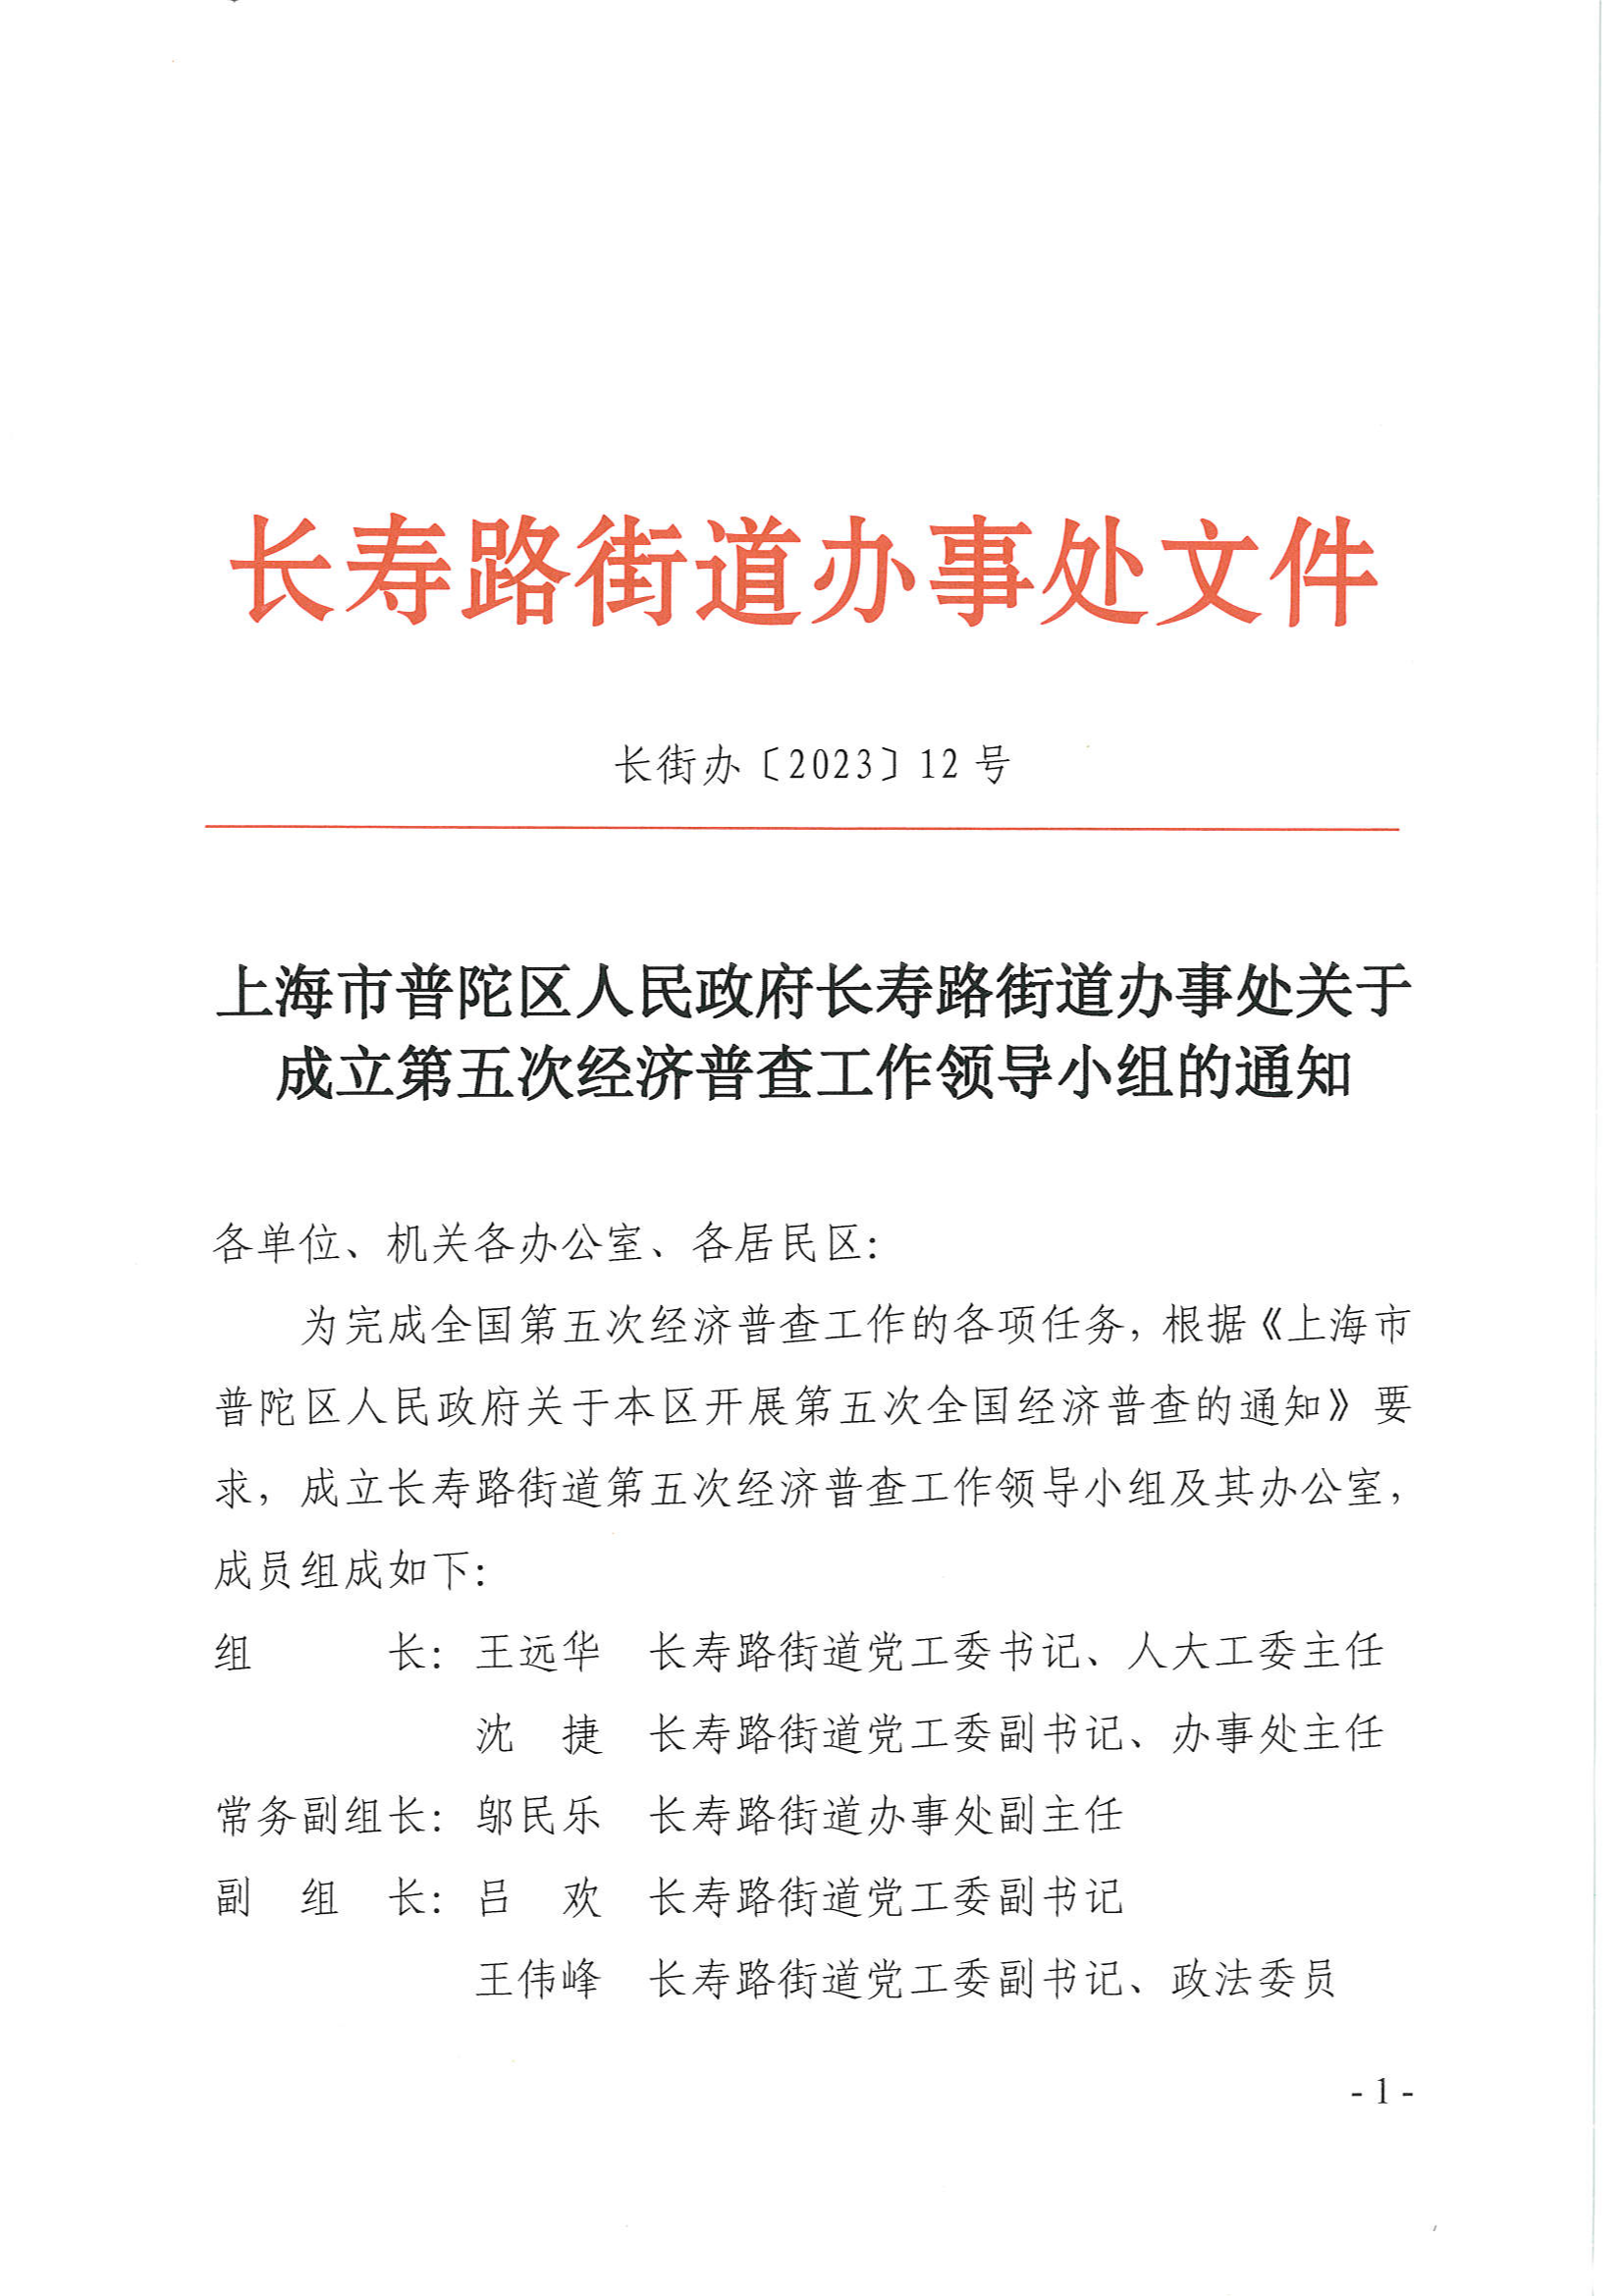 上海市普陀区人民政府长寿路街道办事处关于成立第五次经济普查工作领导小组的通知